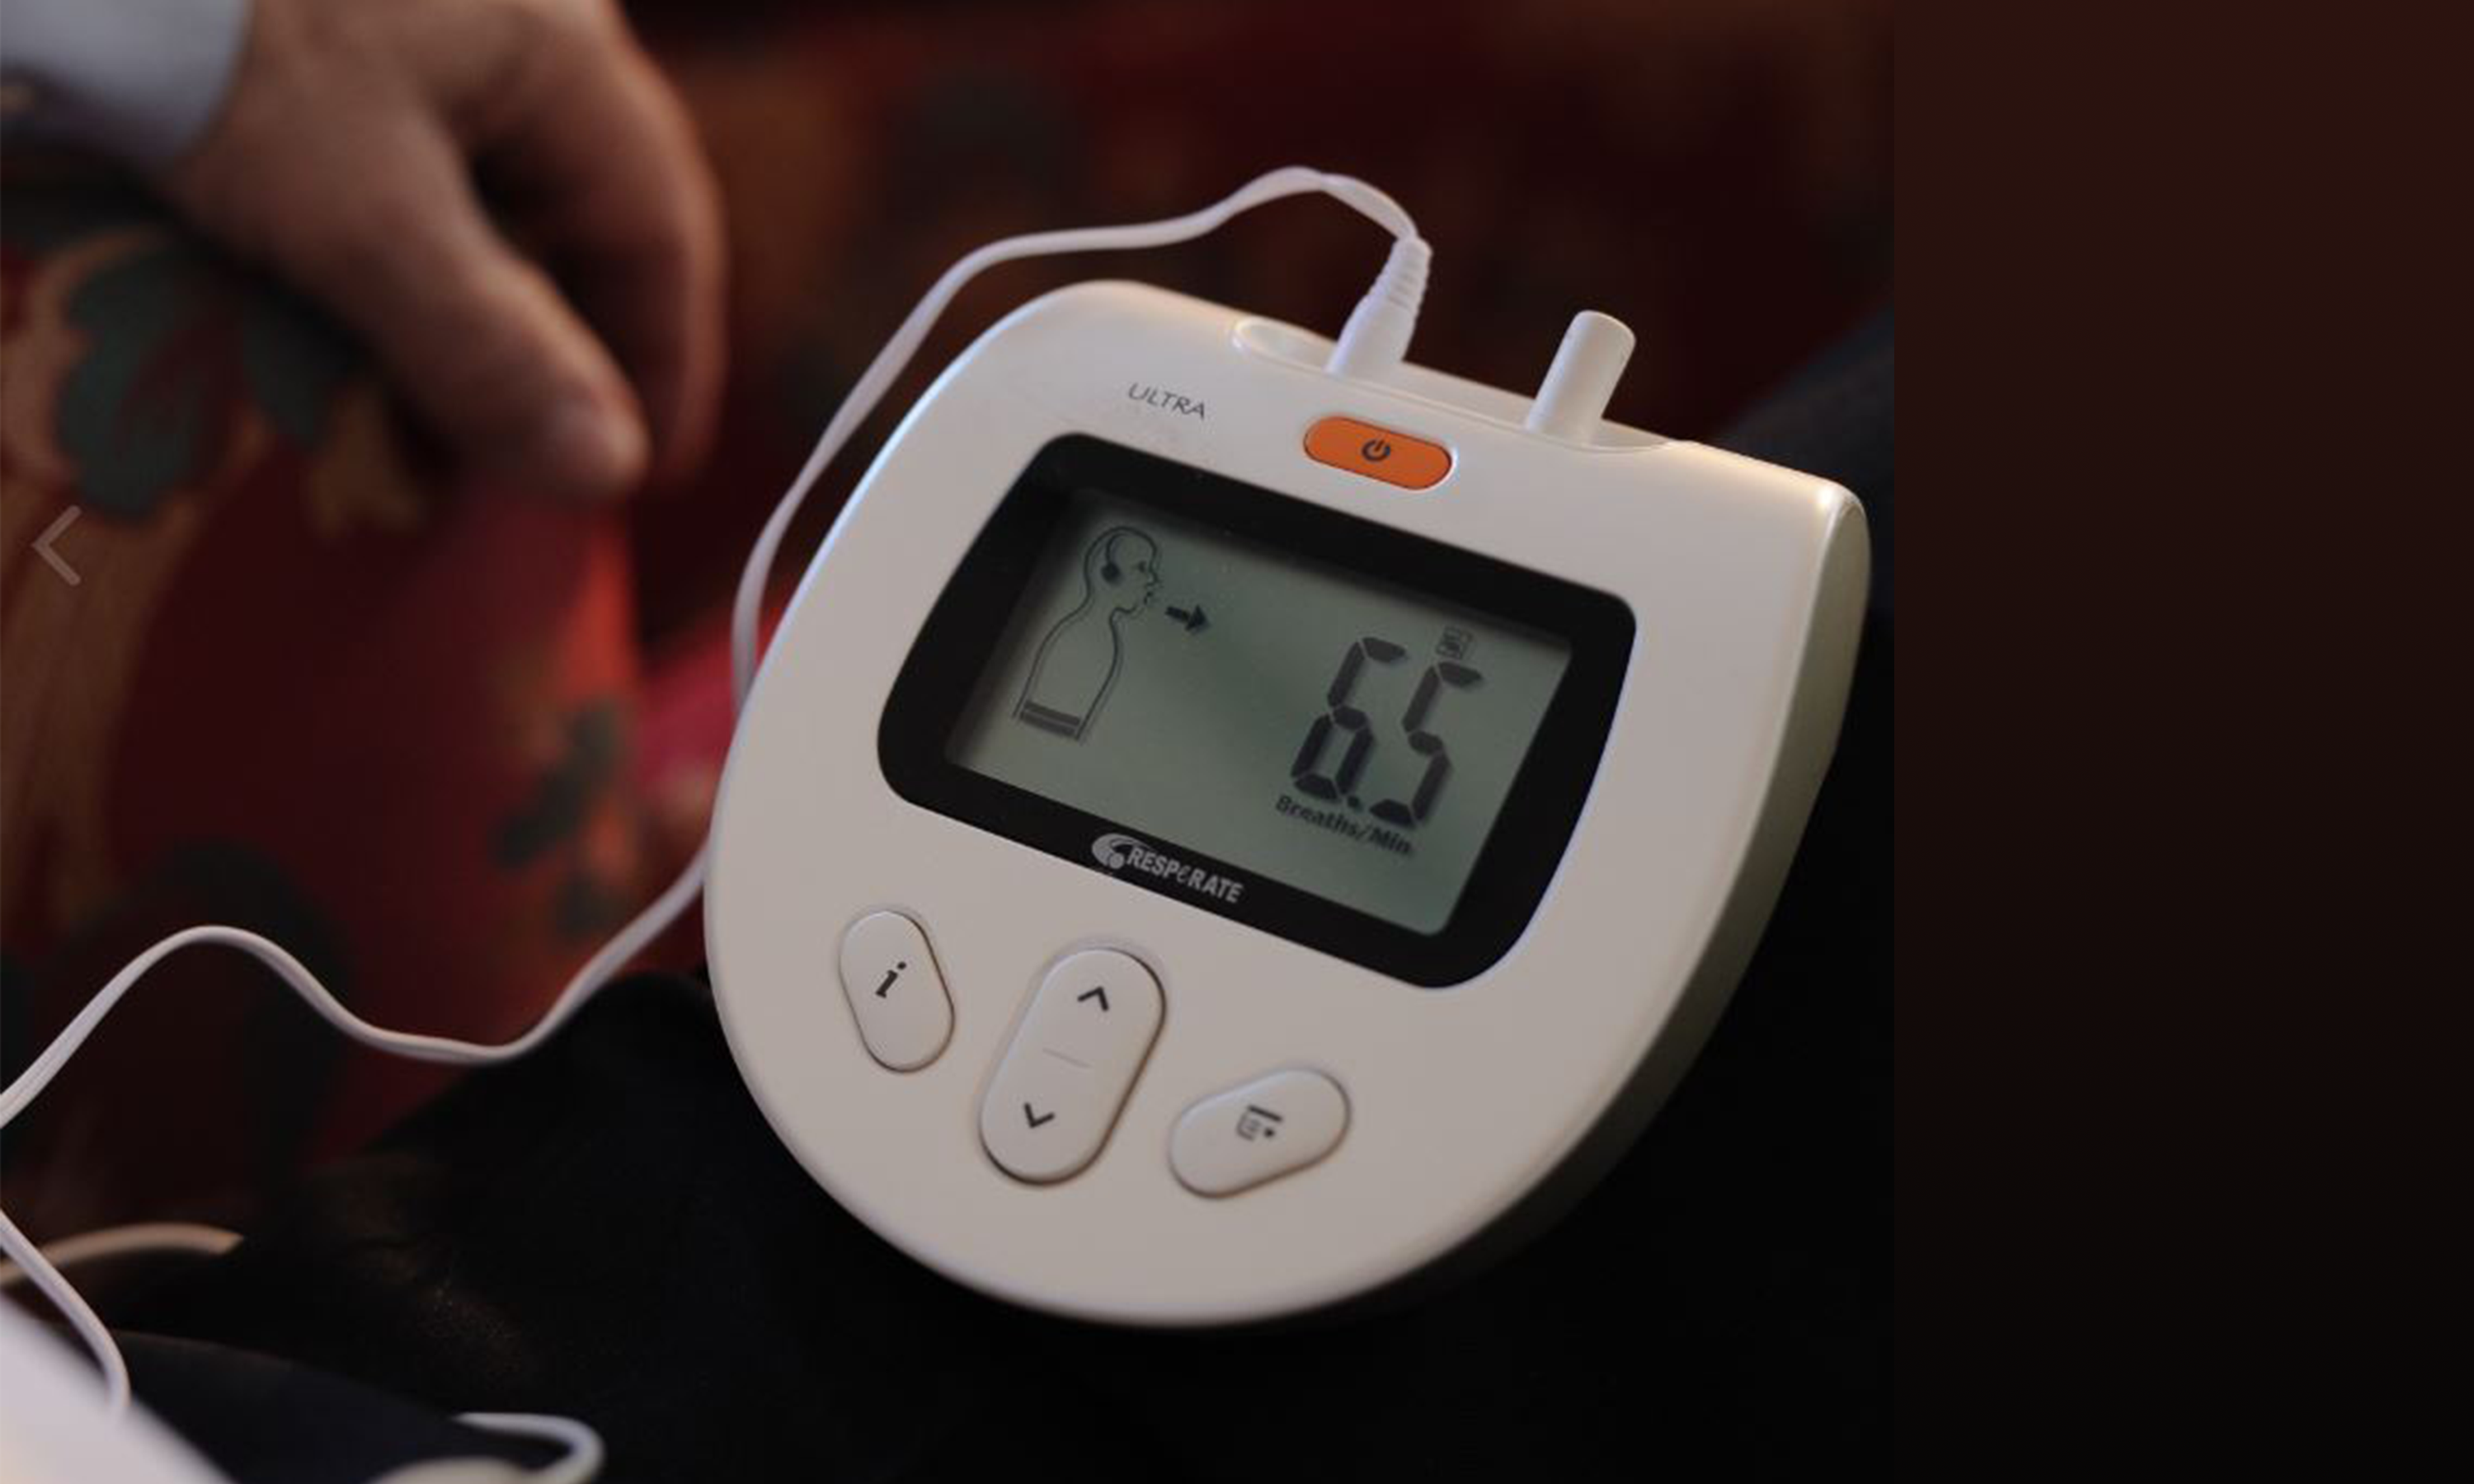 Intercure Resparate lowering Blood Pressure • Nekuda DM